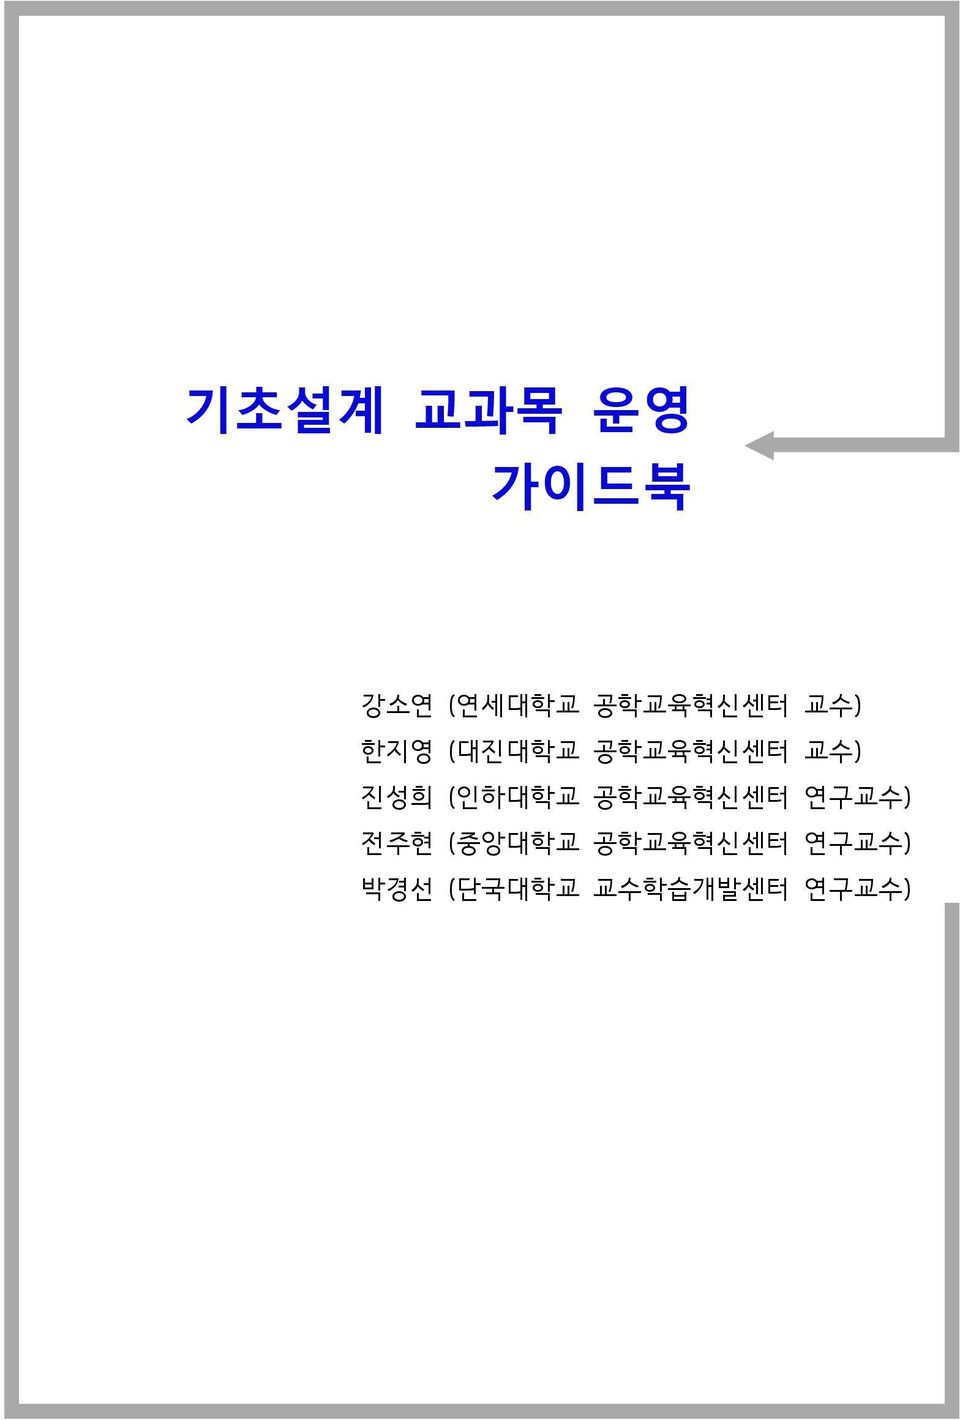 교수) 진성희 (인하대학교 공학교육혁신센터 연구교수) 전주현